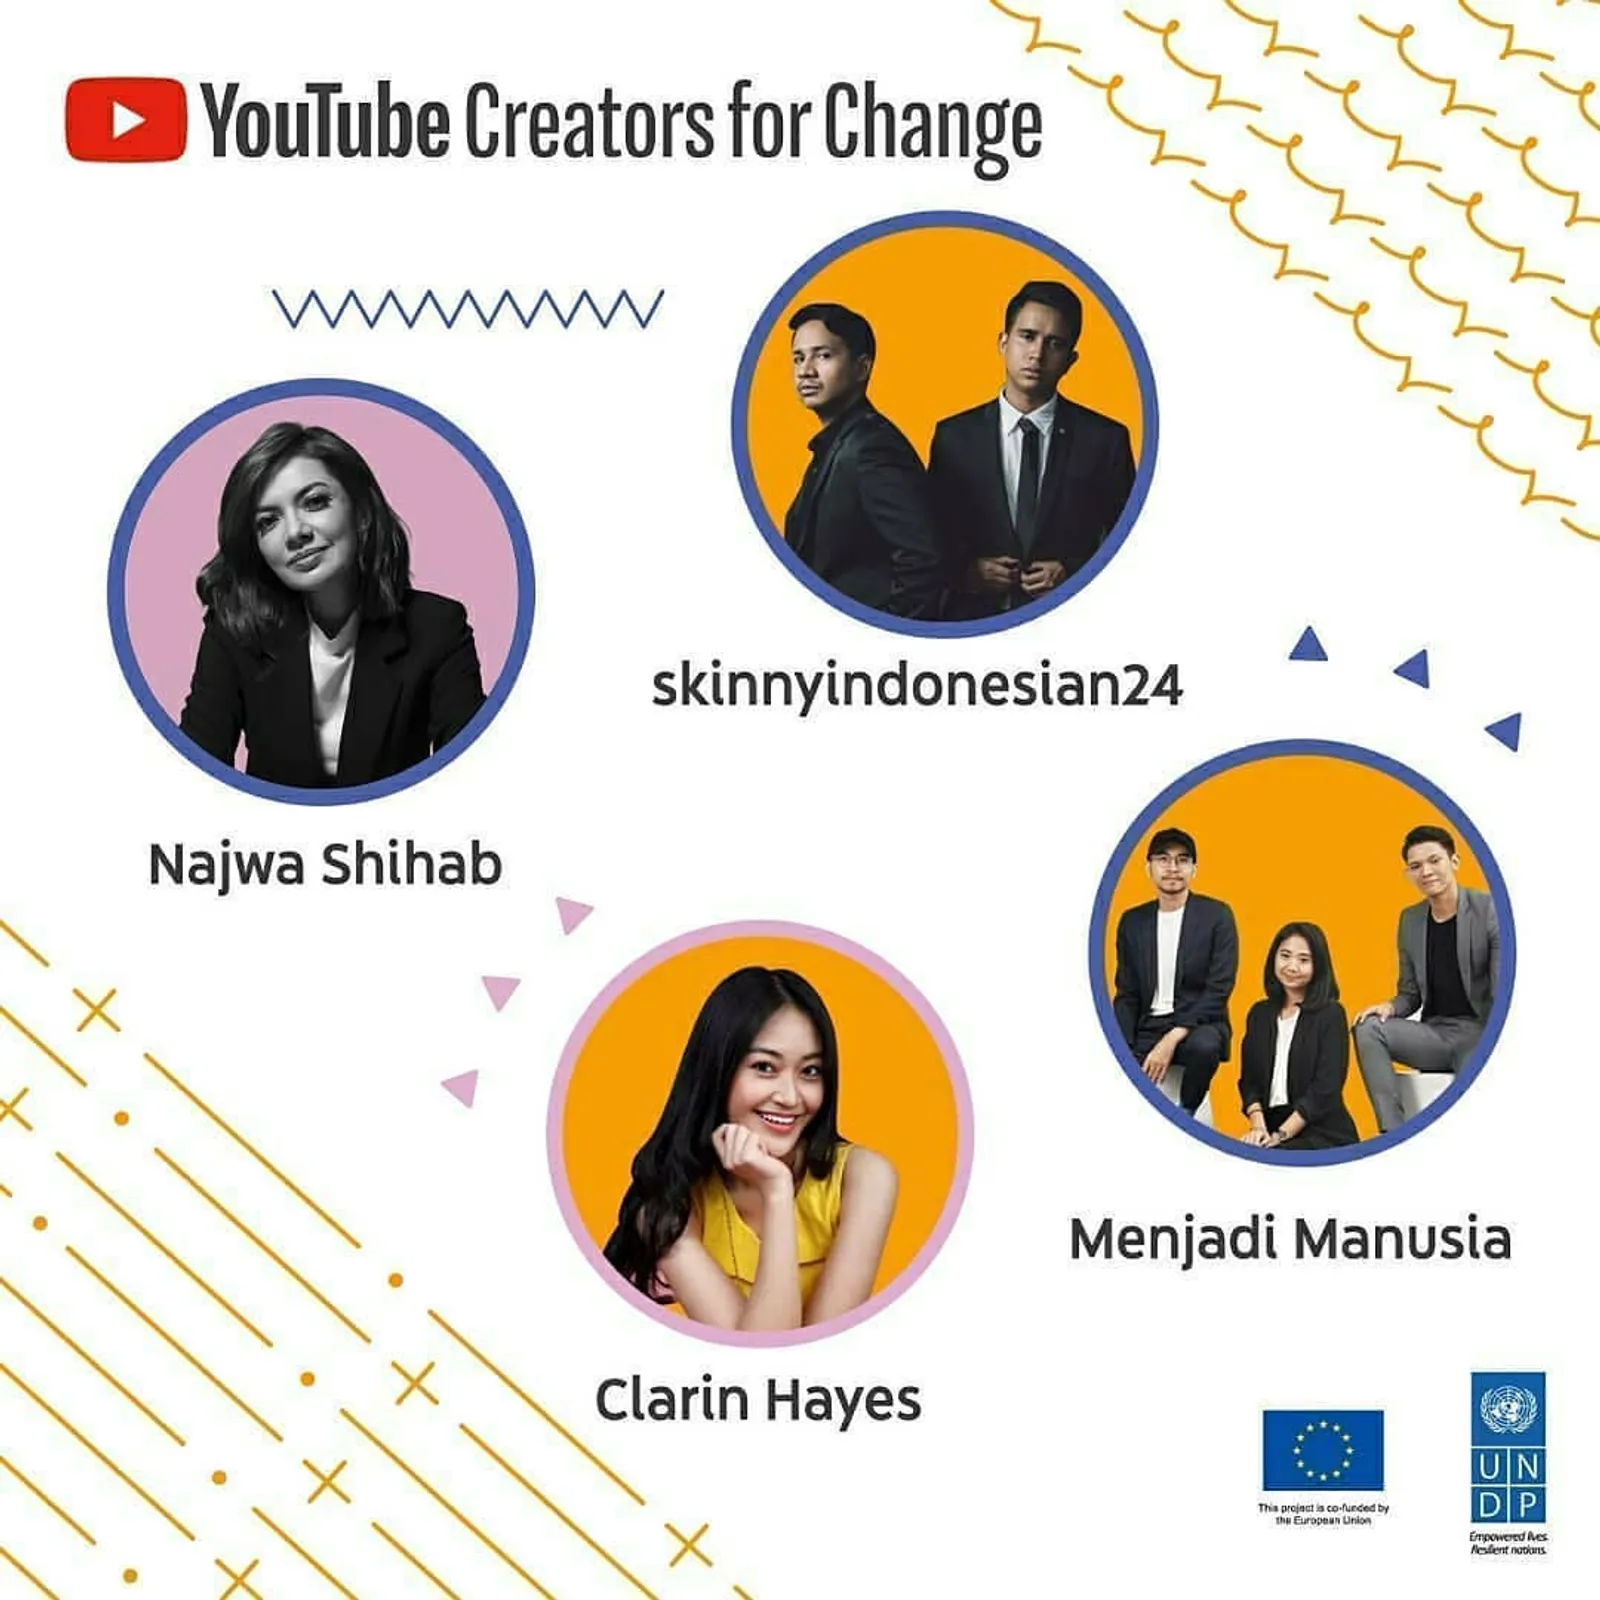 Gaungkan Perubahan Positif, Ini 4 Duta YouTube Creators for Change